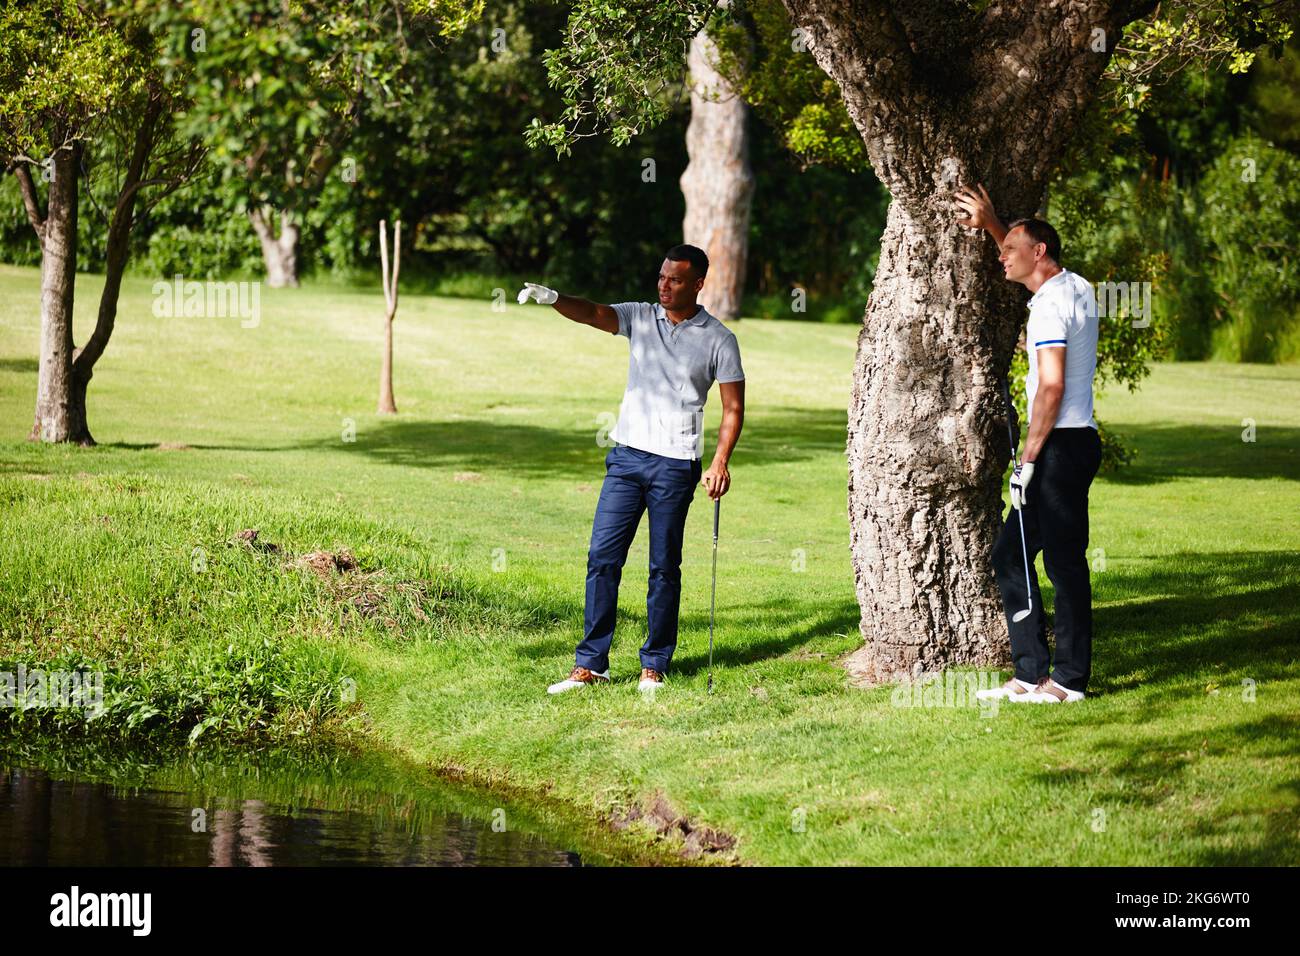 Tracciando il tracciato migliore. due uomini in piedi ad un pericolo d'acqua cercando di capire dove la sfera di golf è. Foto Stock